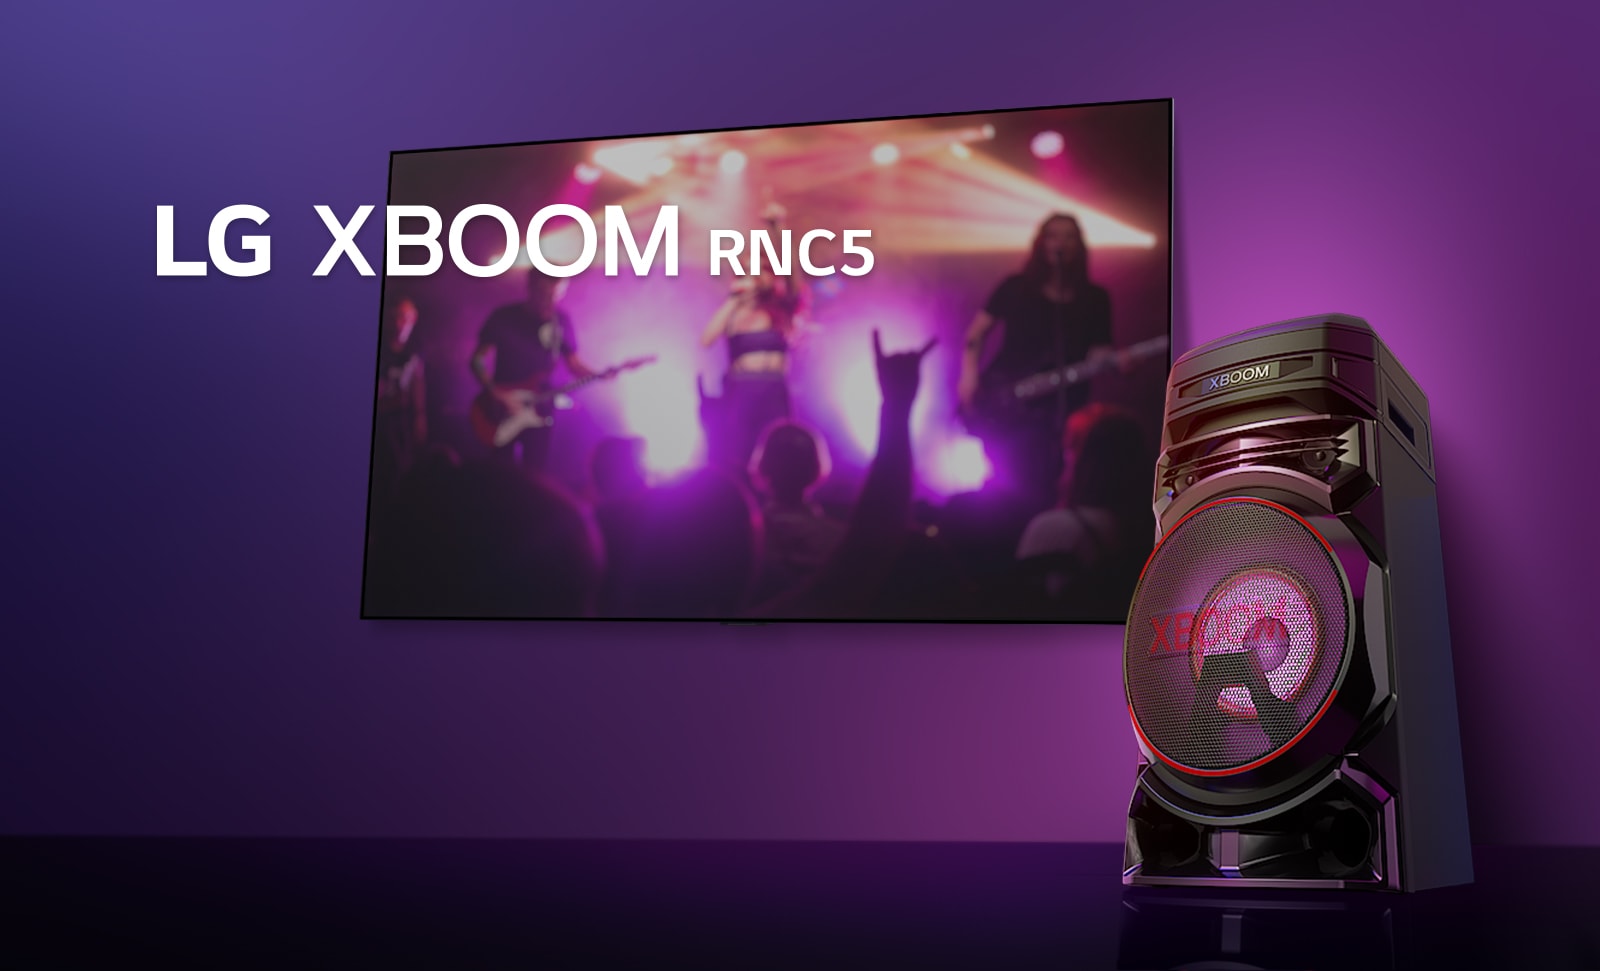 "Widok pod małym kątem prawej strony LG XBOOM RNC5 na fioletowym tle.  Światła XBOOM także są fioletowe. Na ekranie telewizora jest wyświetlona scena z koncertu."